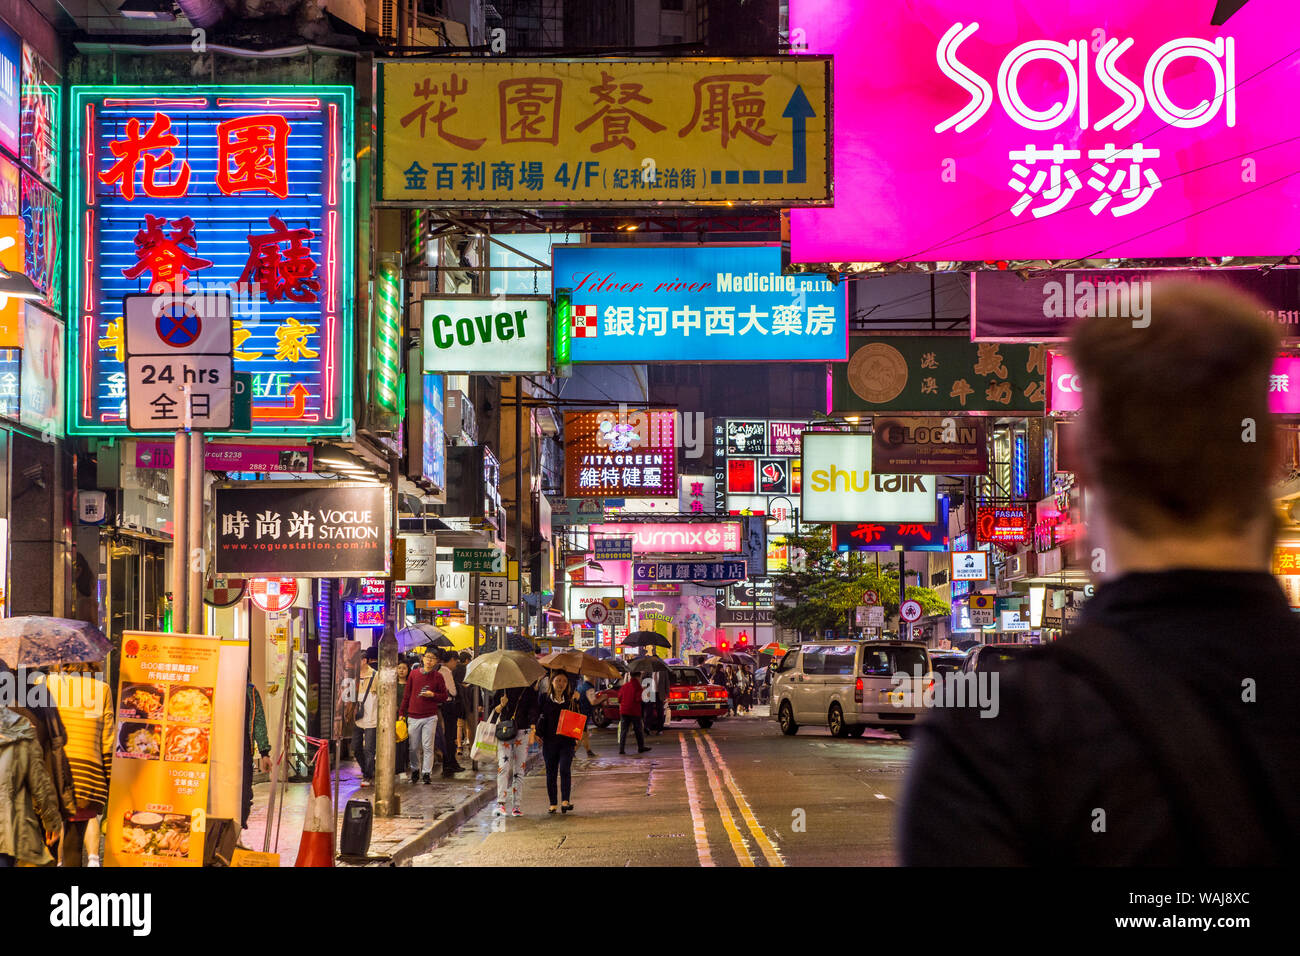 Scène de rue de nuit, Kowloon, Hong Kong, Chine. Banque D'Images